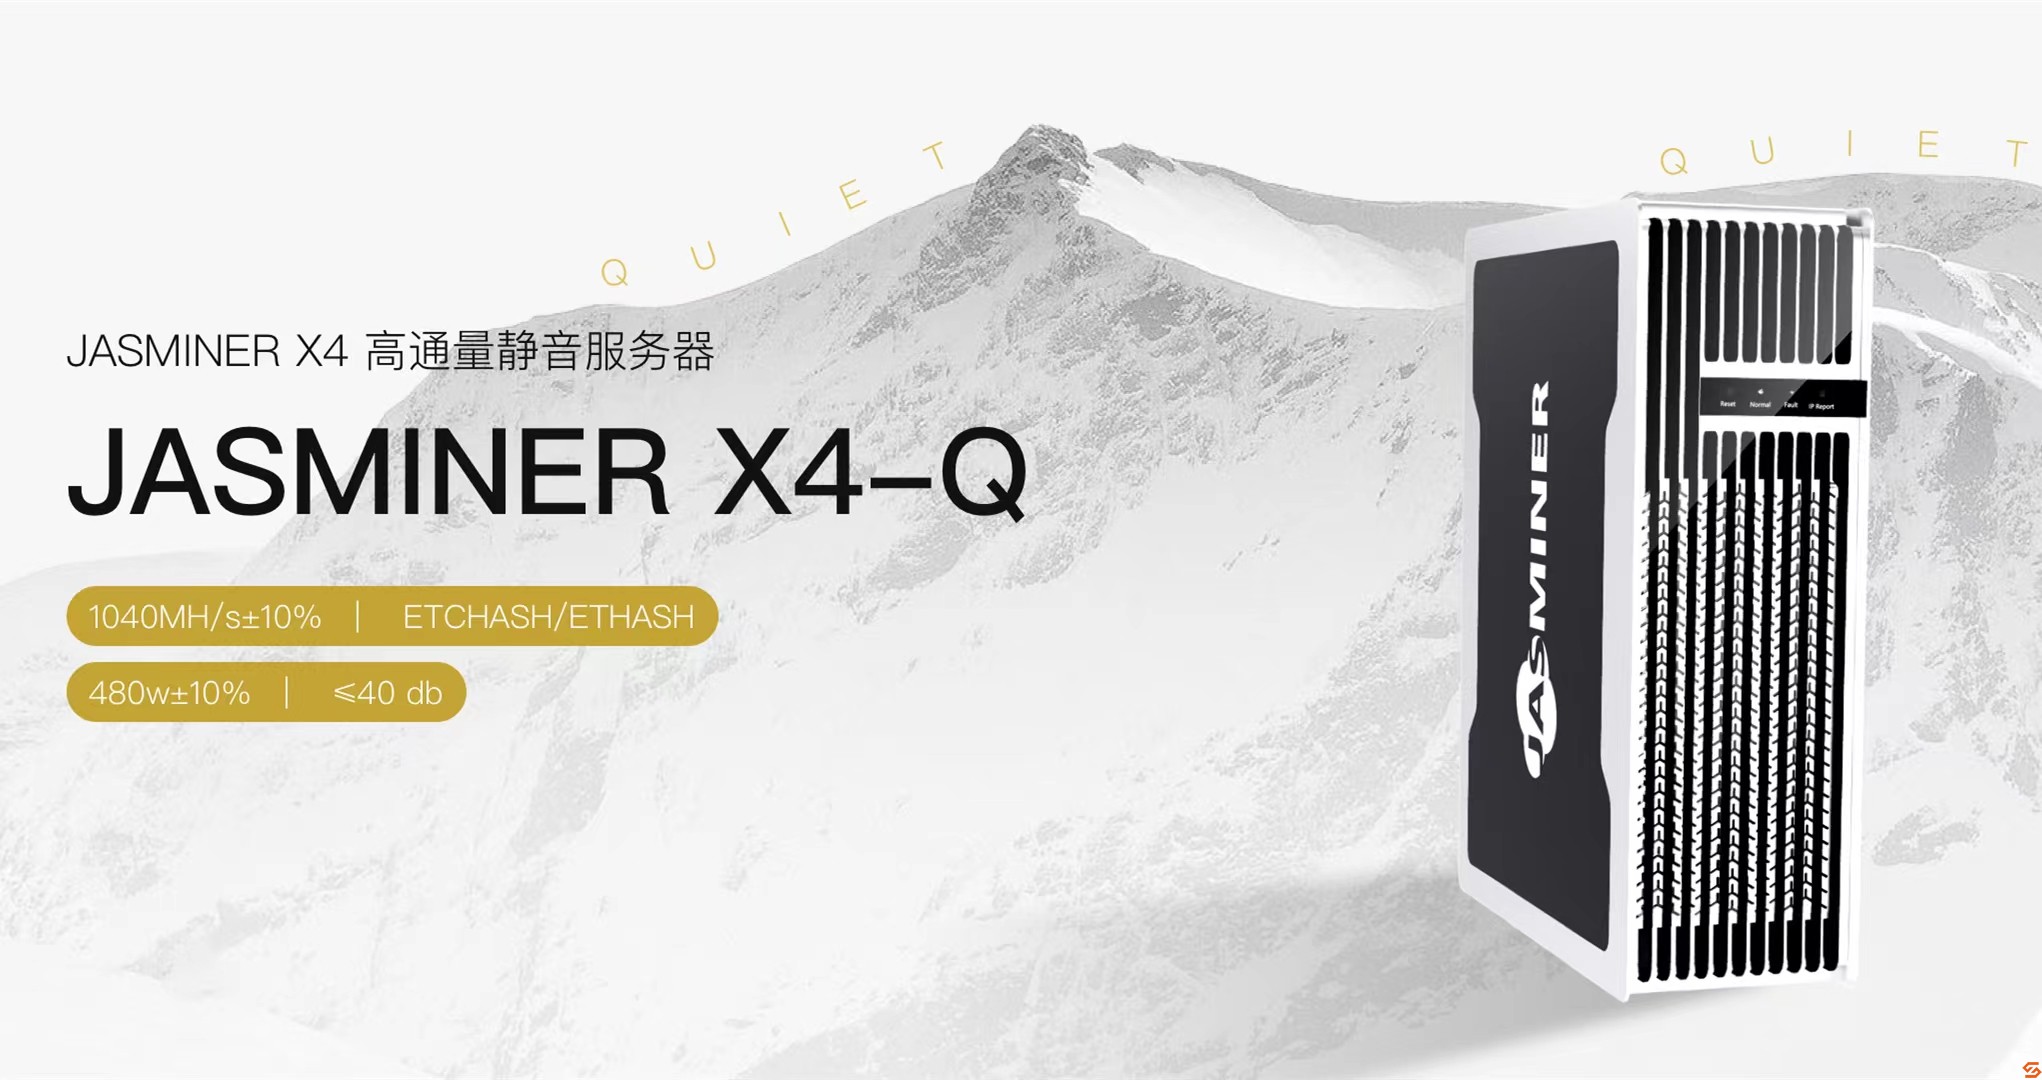 JASMIENR X4-Q高通量静音服务器新品首发